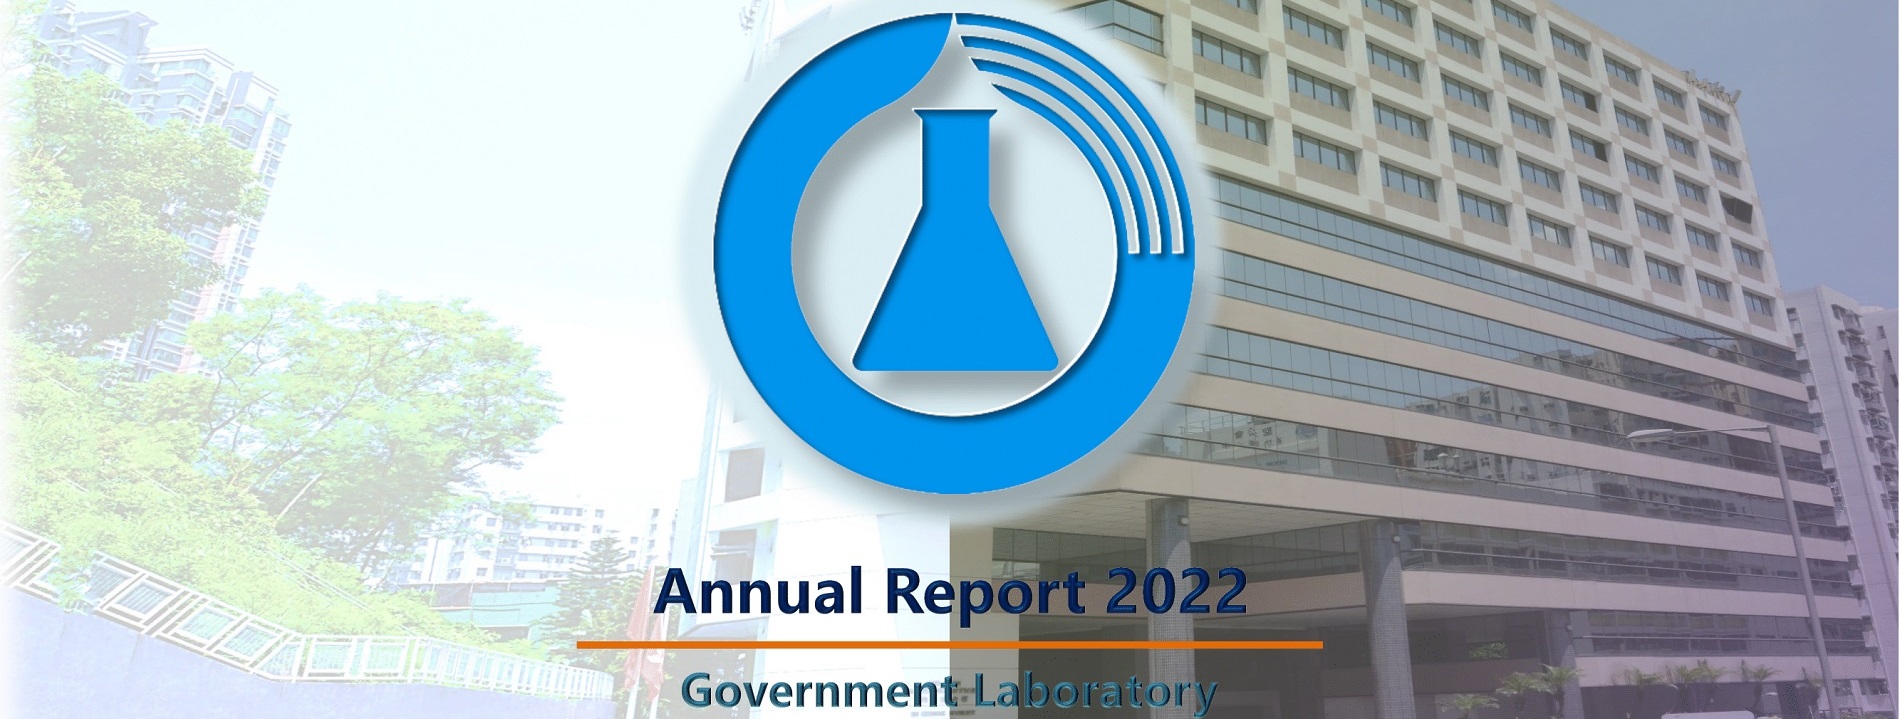 Government Laboratory Annual Report